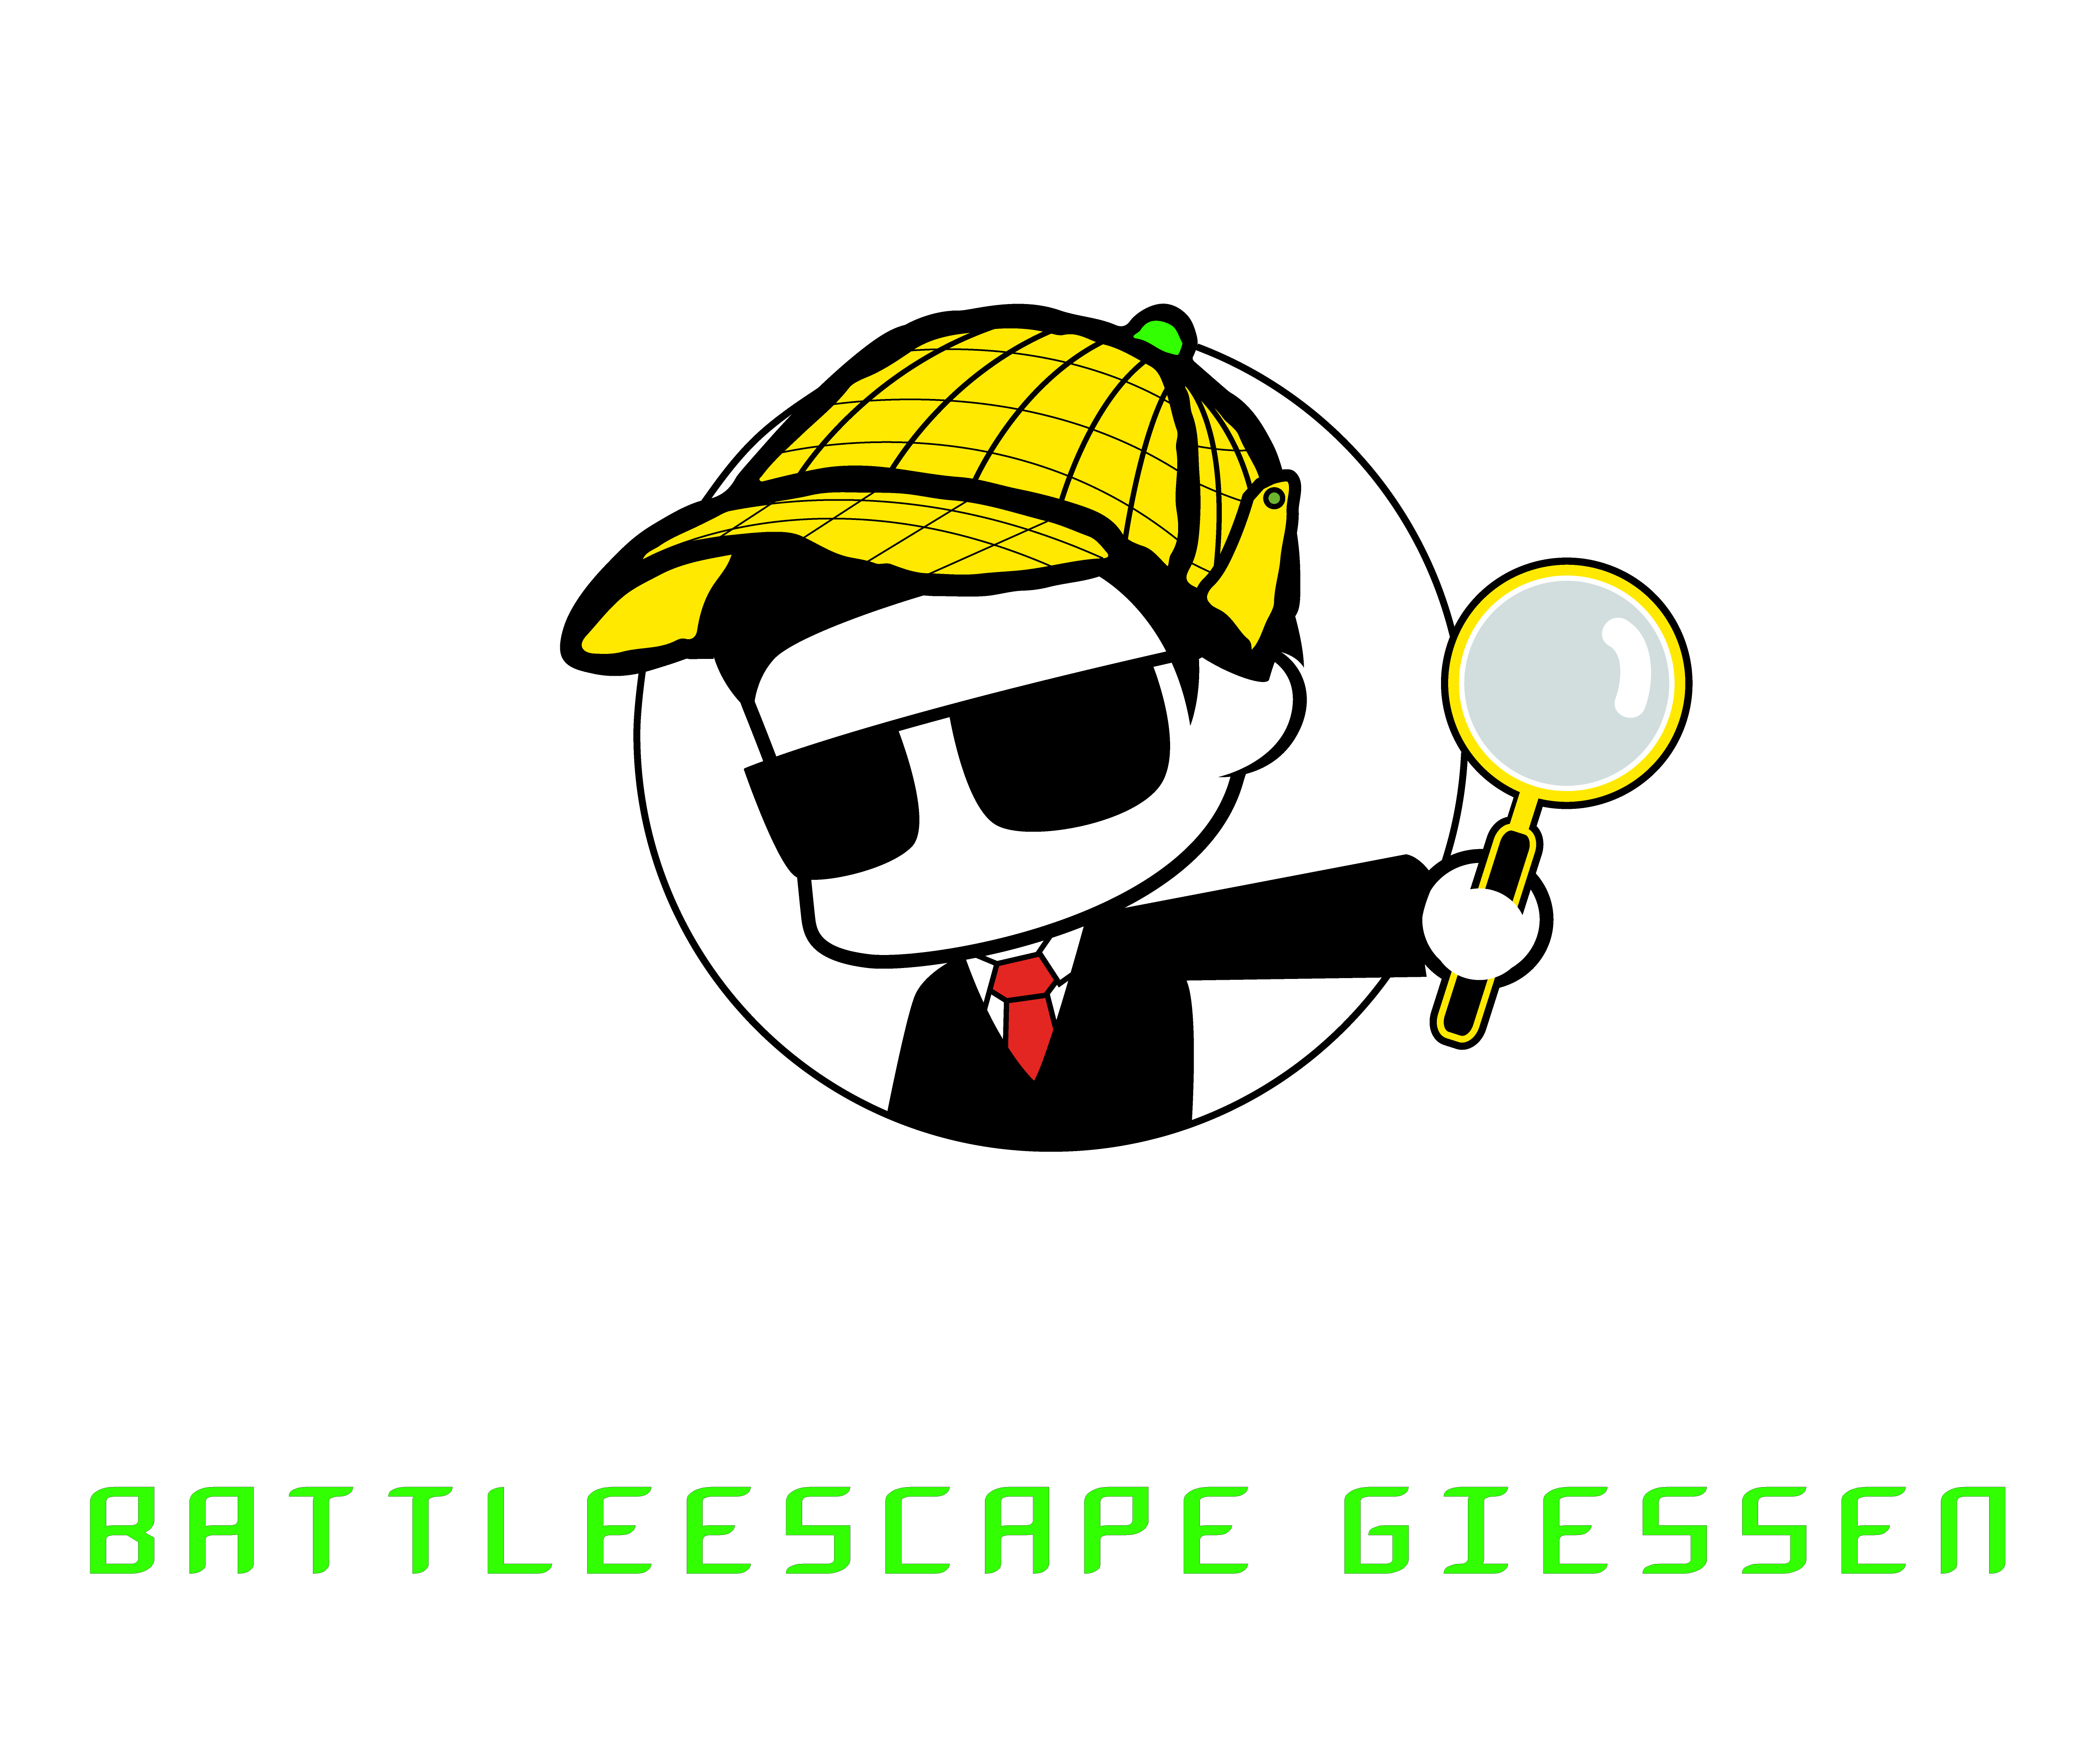 Legendary BattleEscape Giessen